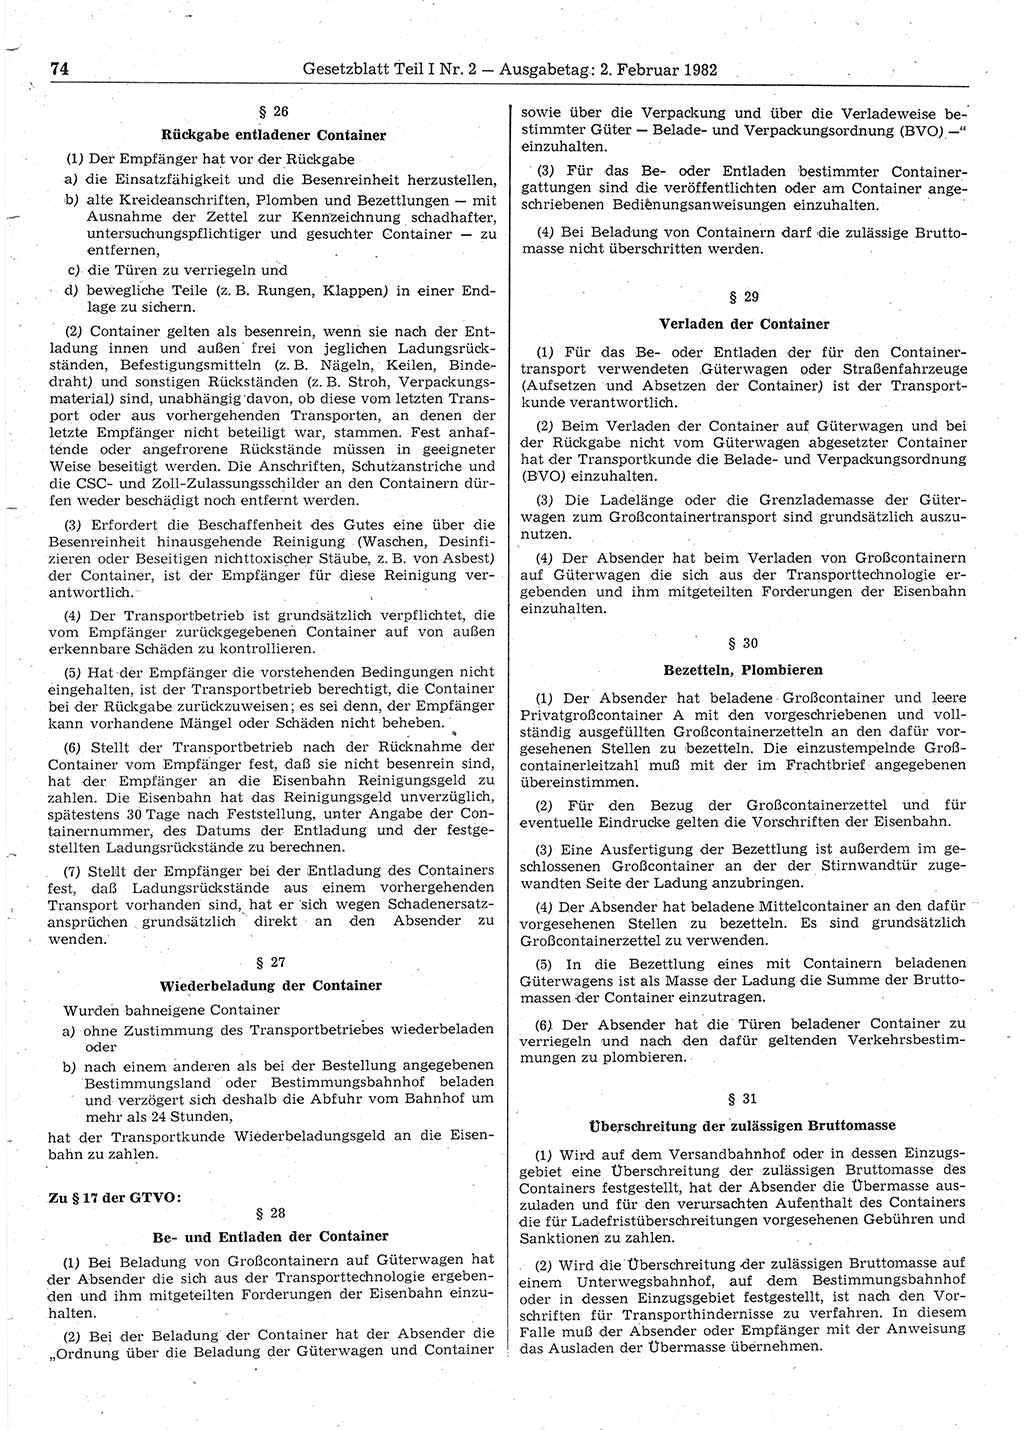 Gesetzblatt (GBl.) der Deutschen Demokratischen Republik (DDR) Teil Ⅰ 1982, Seite 74 (GBl. DDR Ⅰ 1982, S. 74)